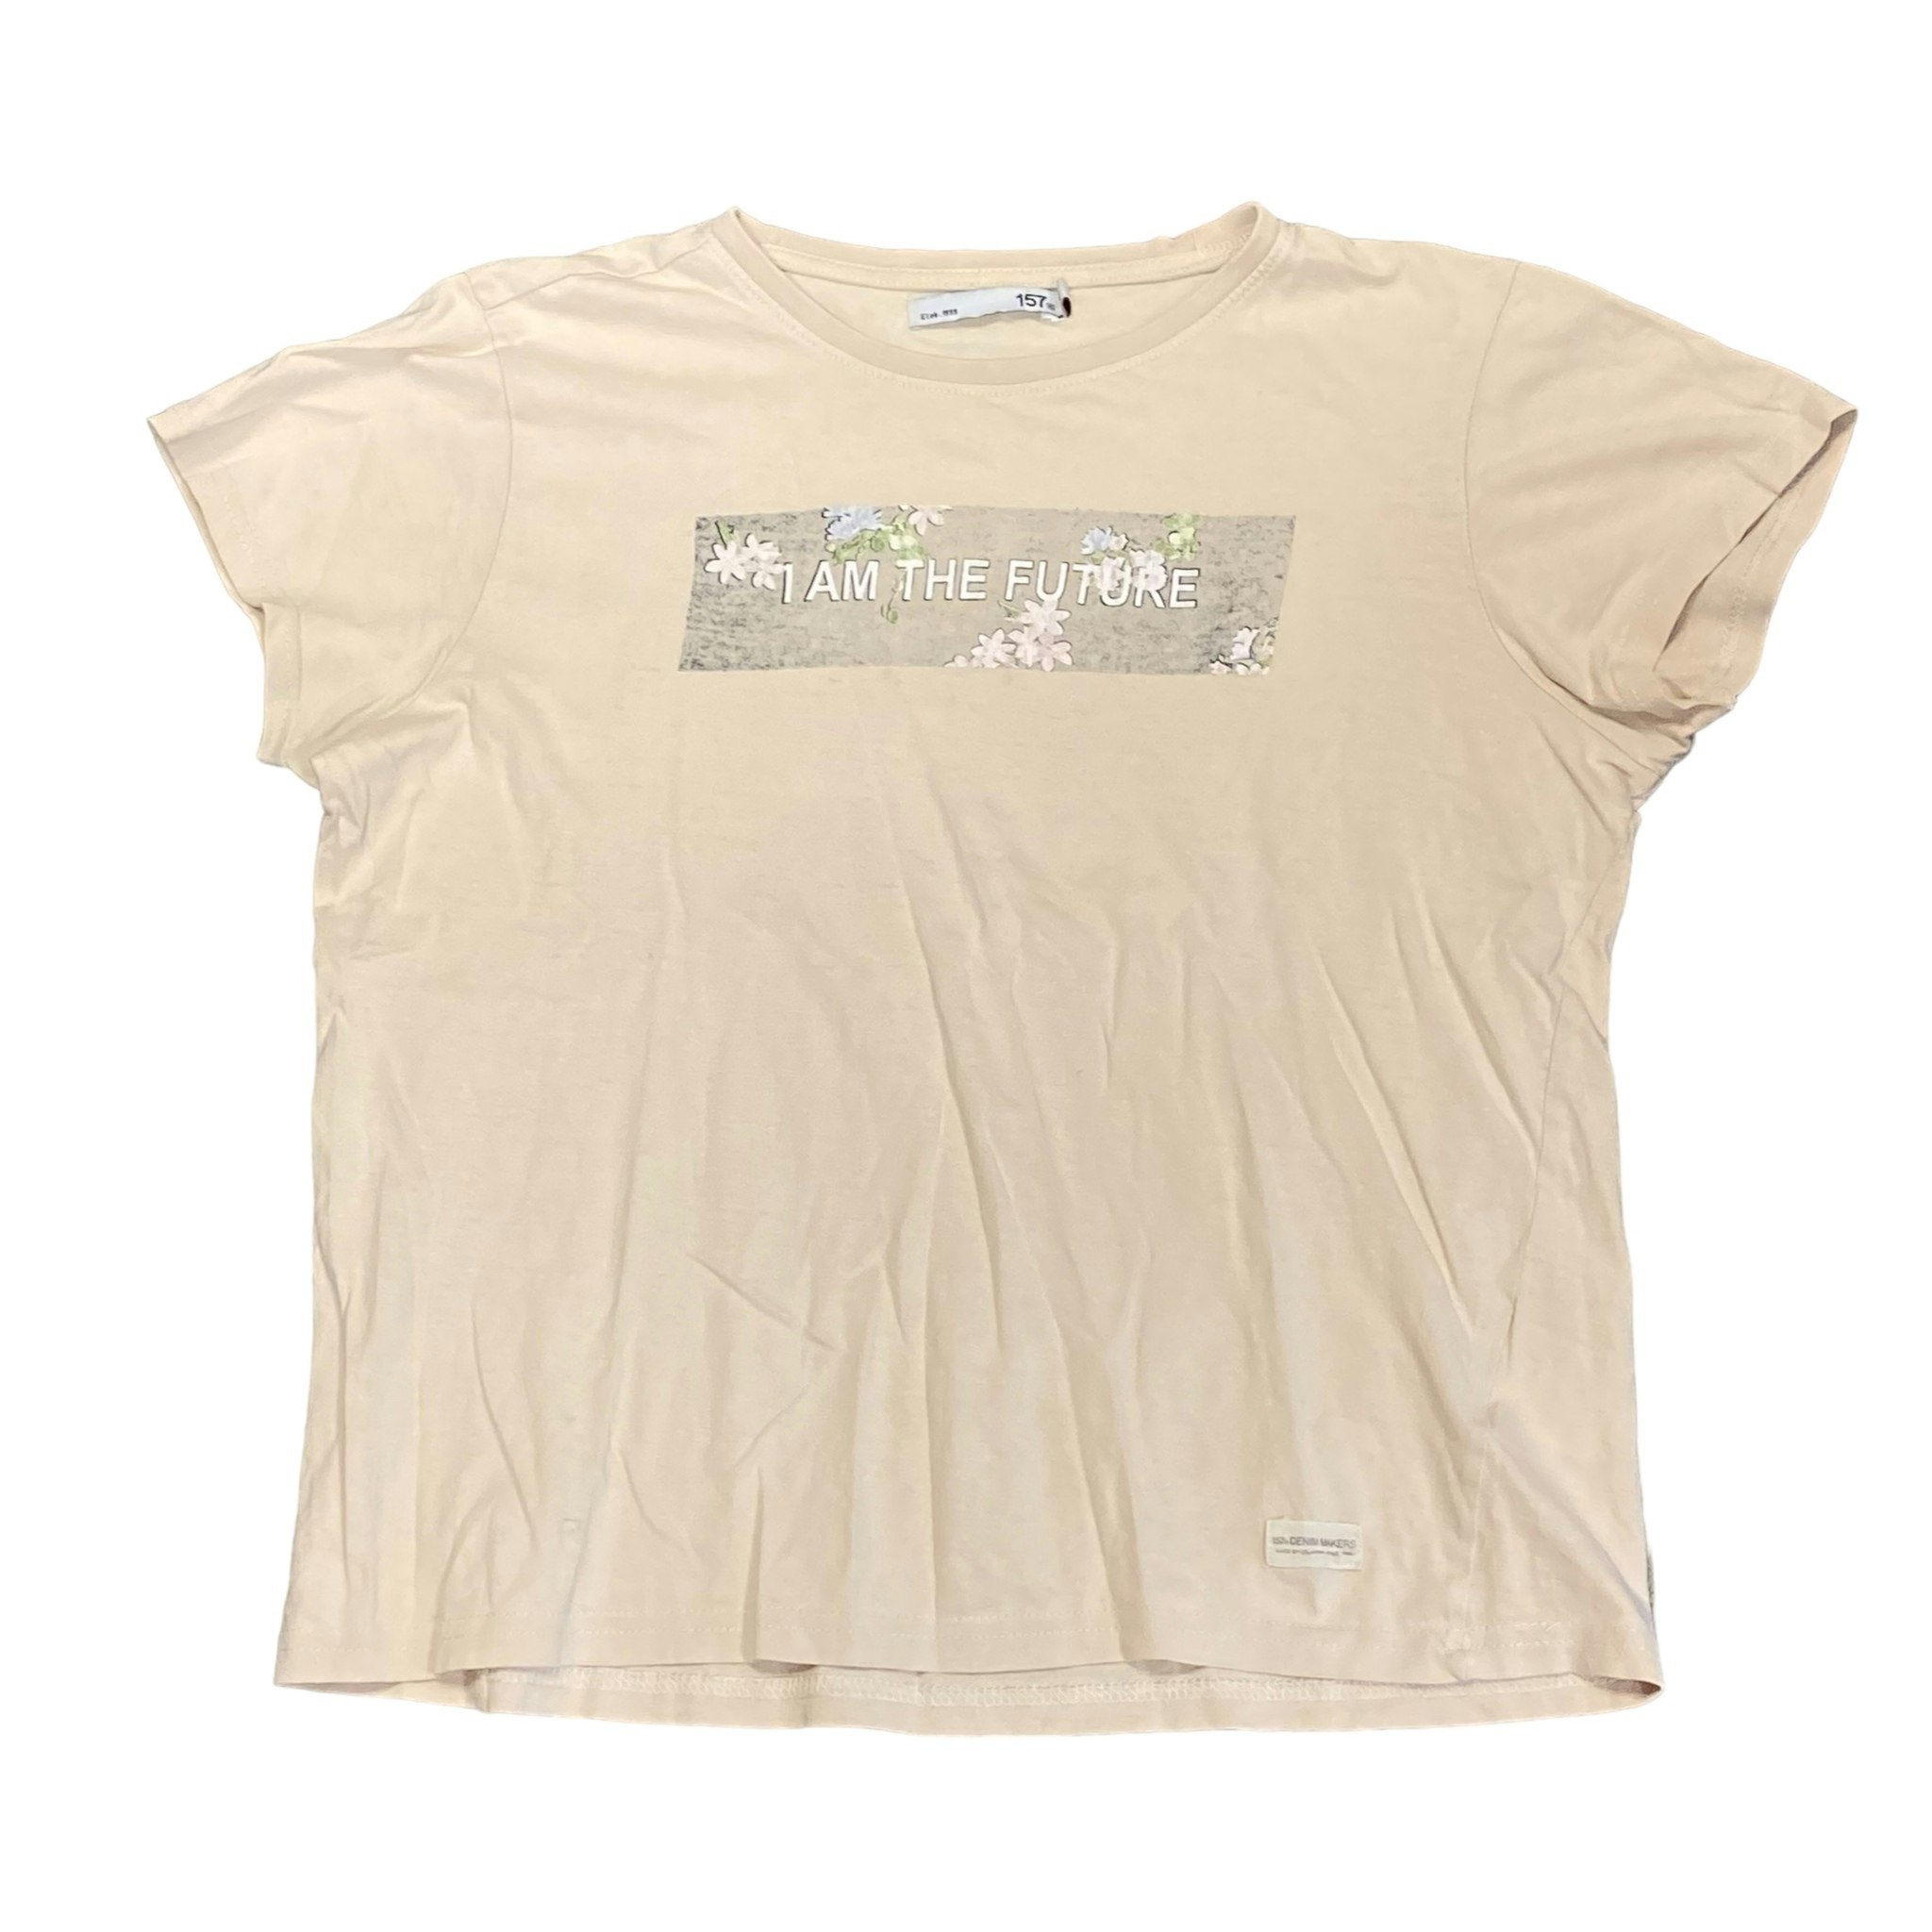 Rosa T-shirt stl 150